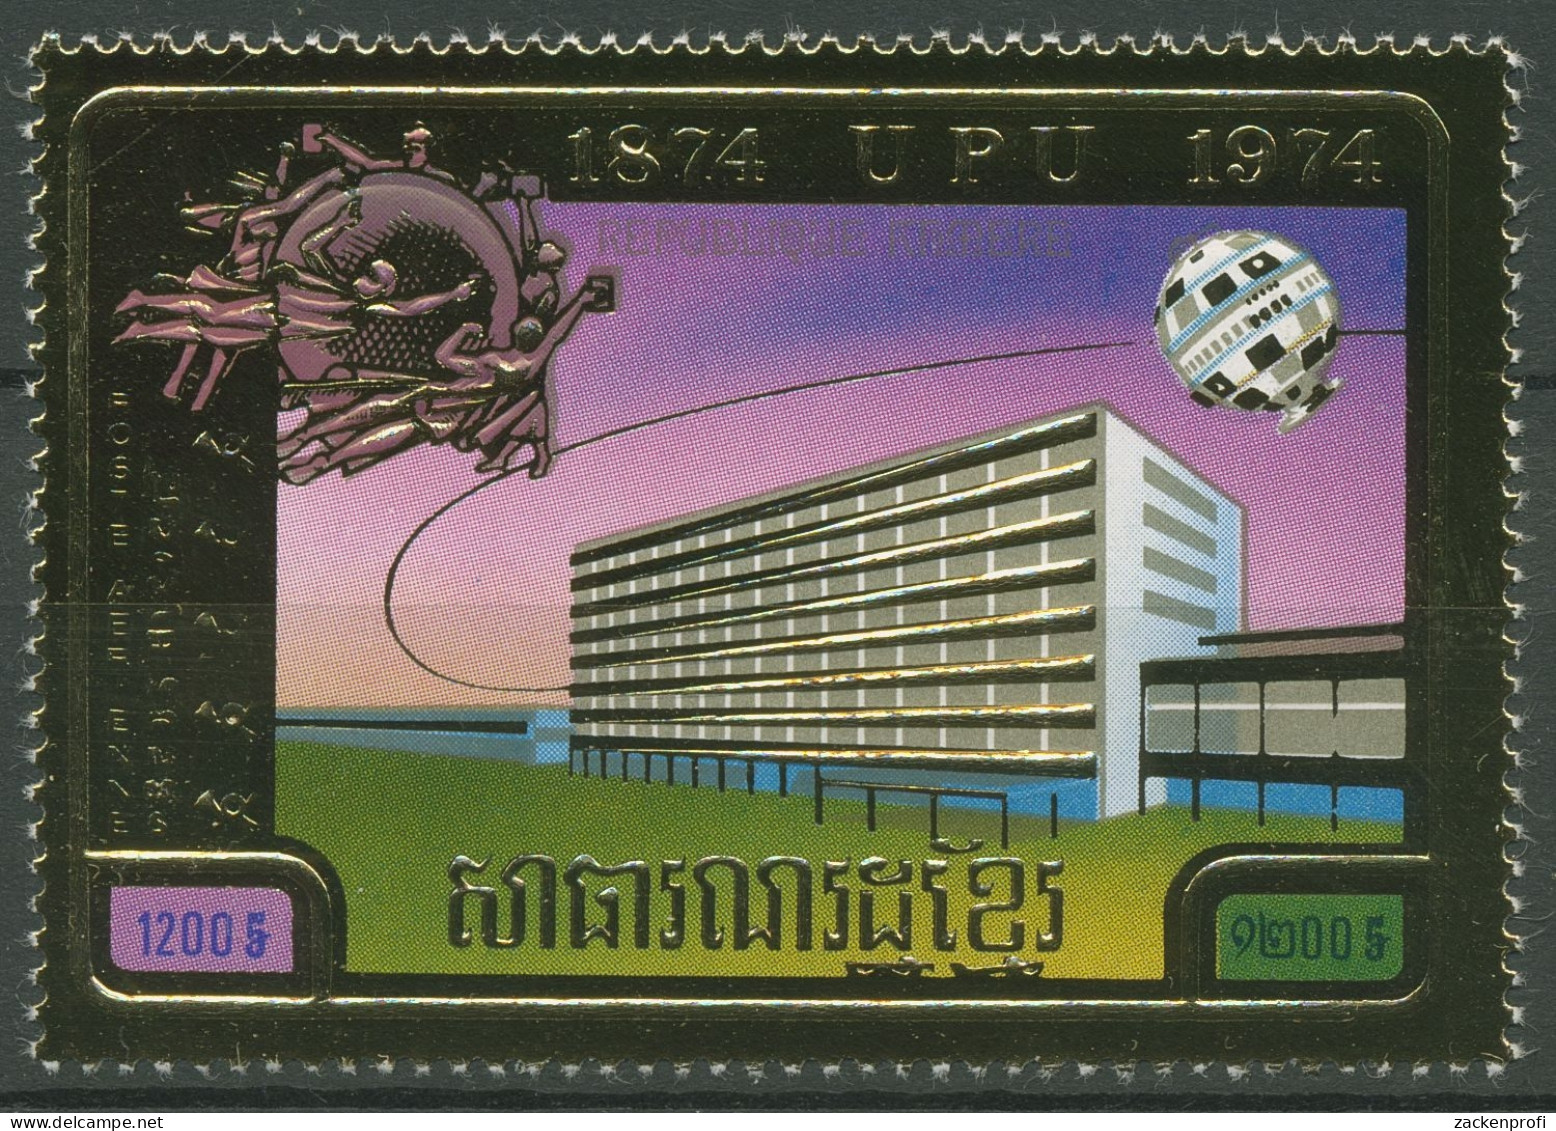 Kambodscha 1974 Weltpostverein UPU 405 A Postfrisch - Kambodscha